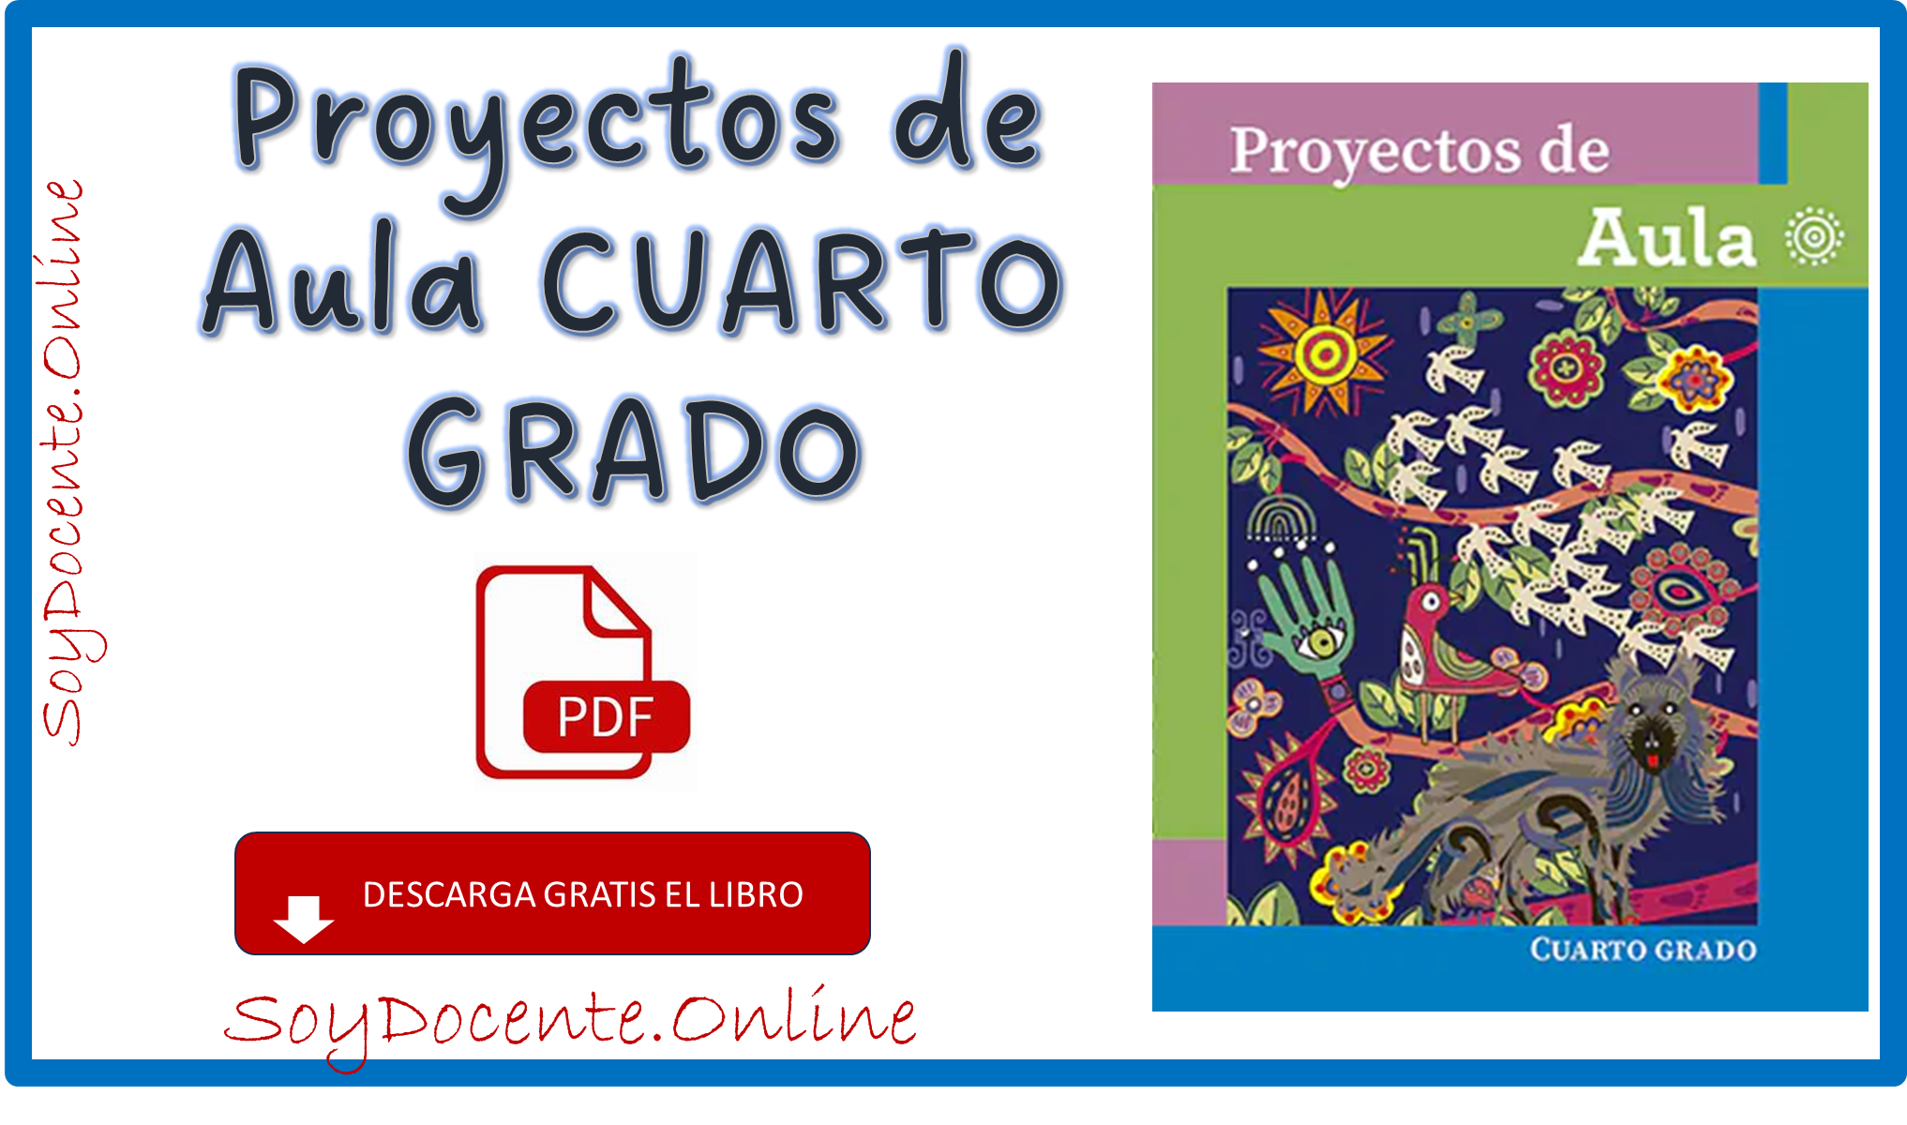 Descarga en PDF gratis el Libro de Proyectos de aula cuarto grado de